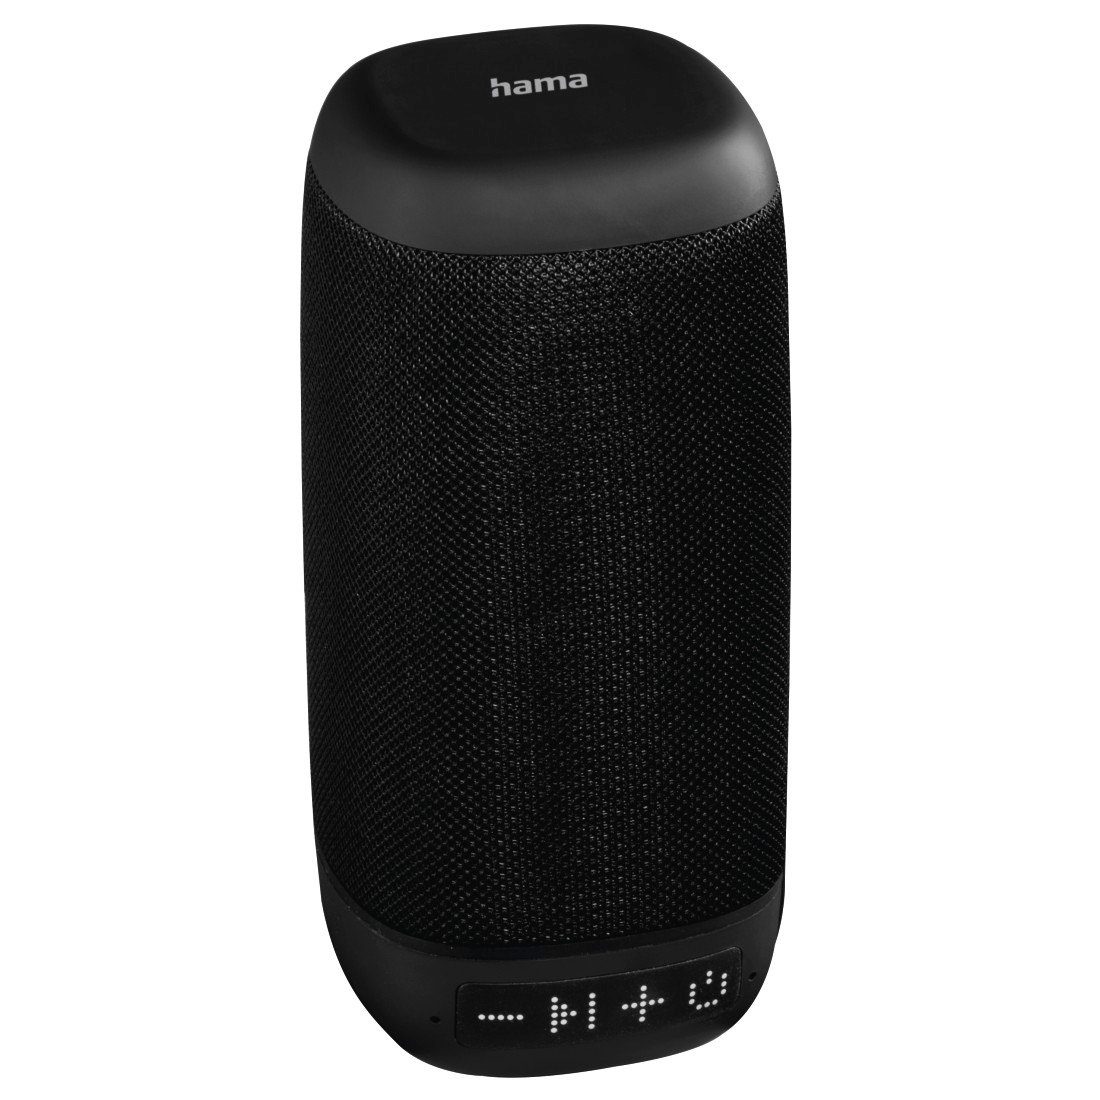 Hama Tragbarer Bluetooth Lautsprecher 3W, USB C,12h Akku Laufzeit Mono  Bluetooth-Lautsprecher (Bluetooth, 3 W), 3 Watt Musikleistung,  Lieblingslieder via Bluetooth bis zu 12 Stunden genießen